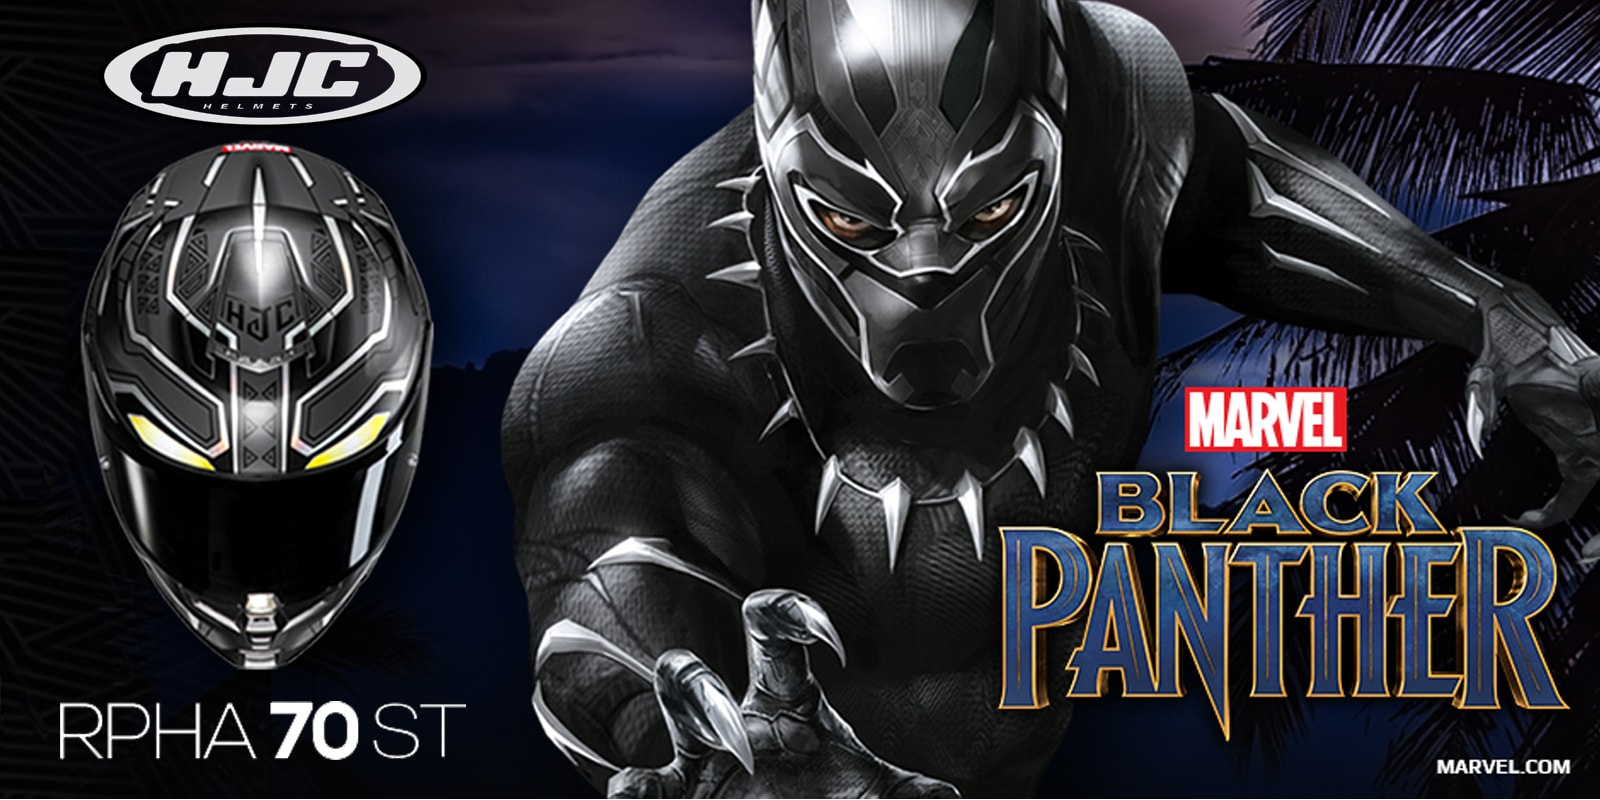 HJC 2018 | RPHA 70 ST Black Panther Helmets